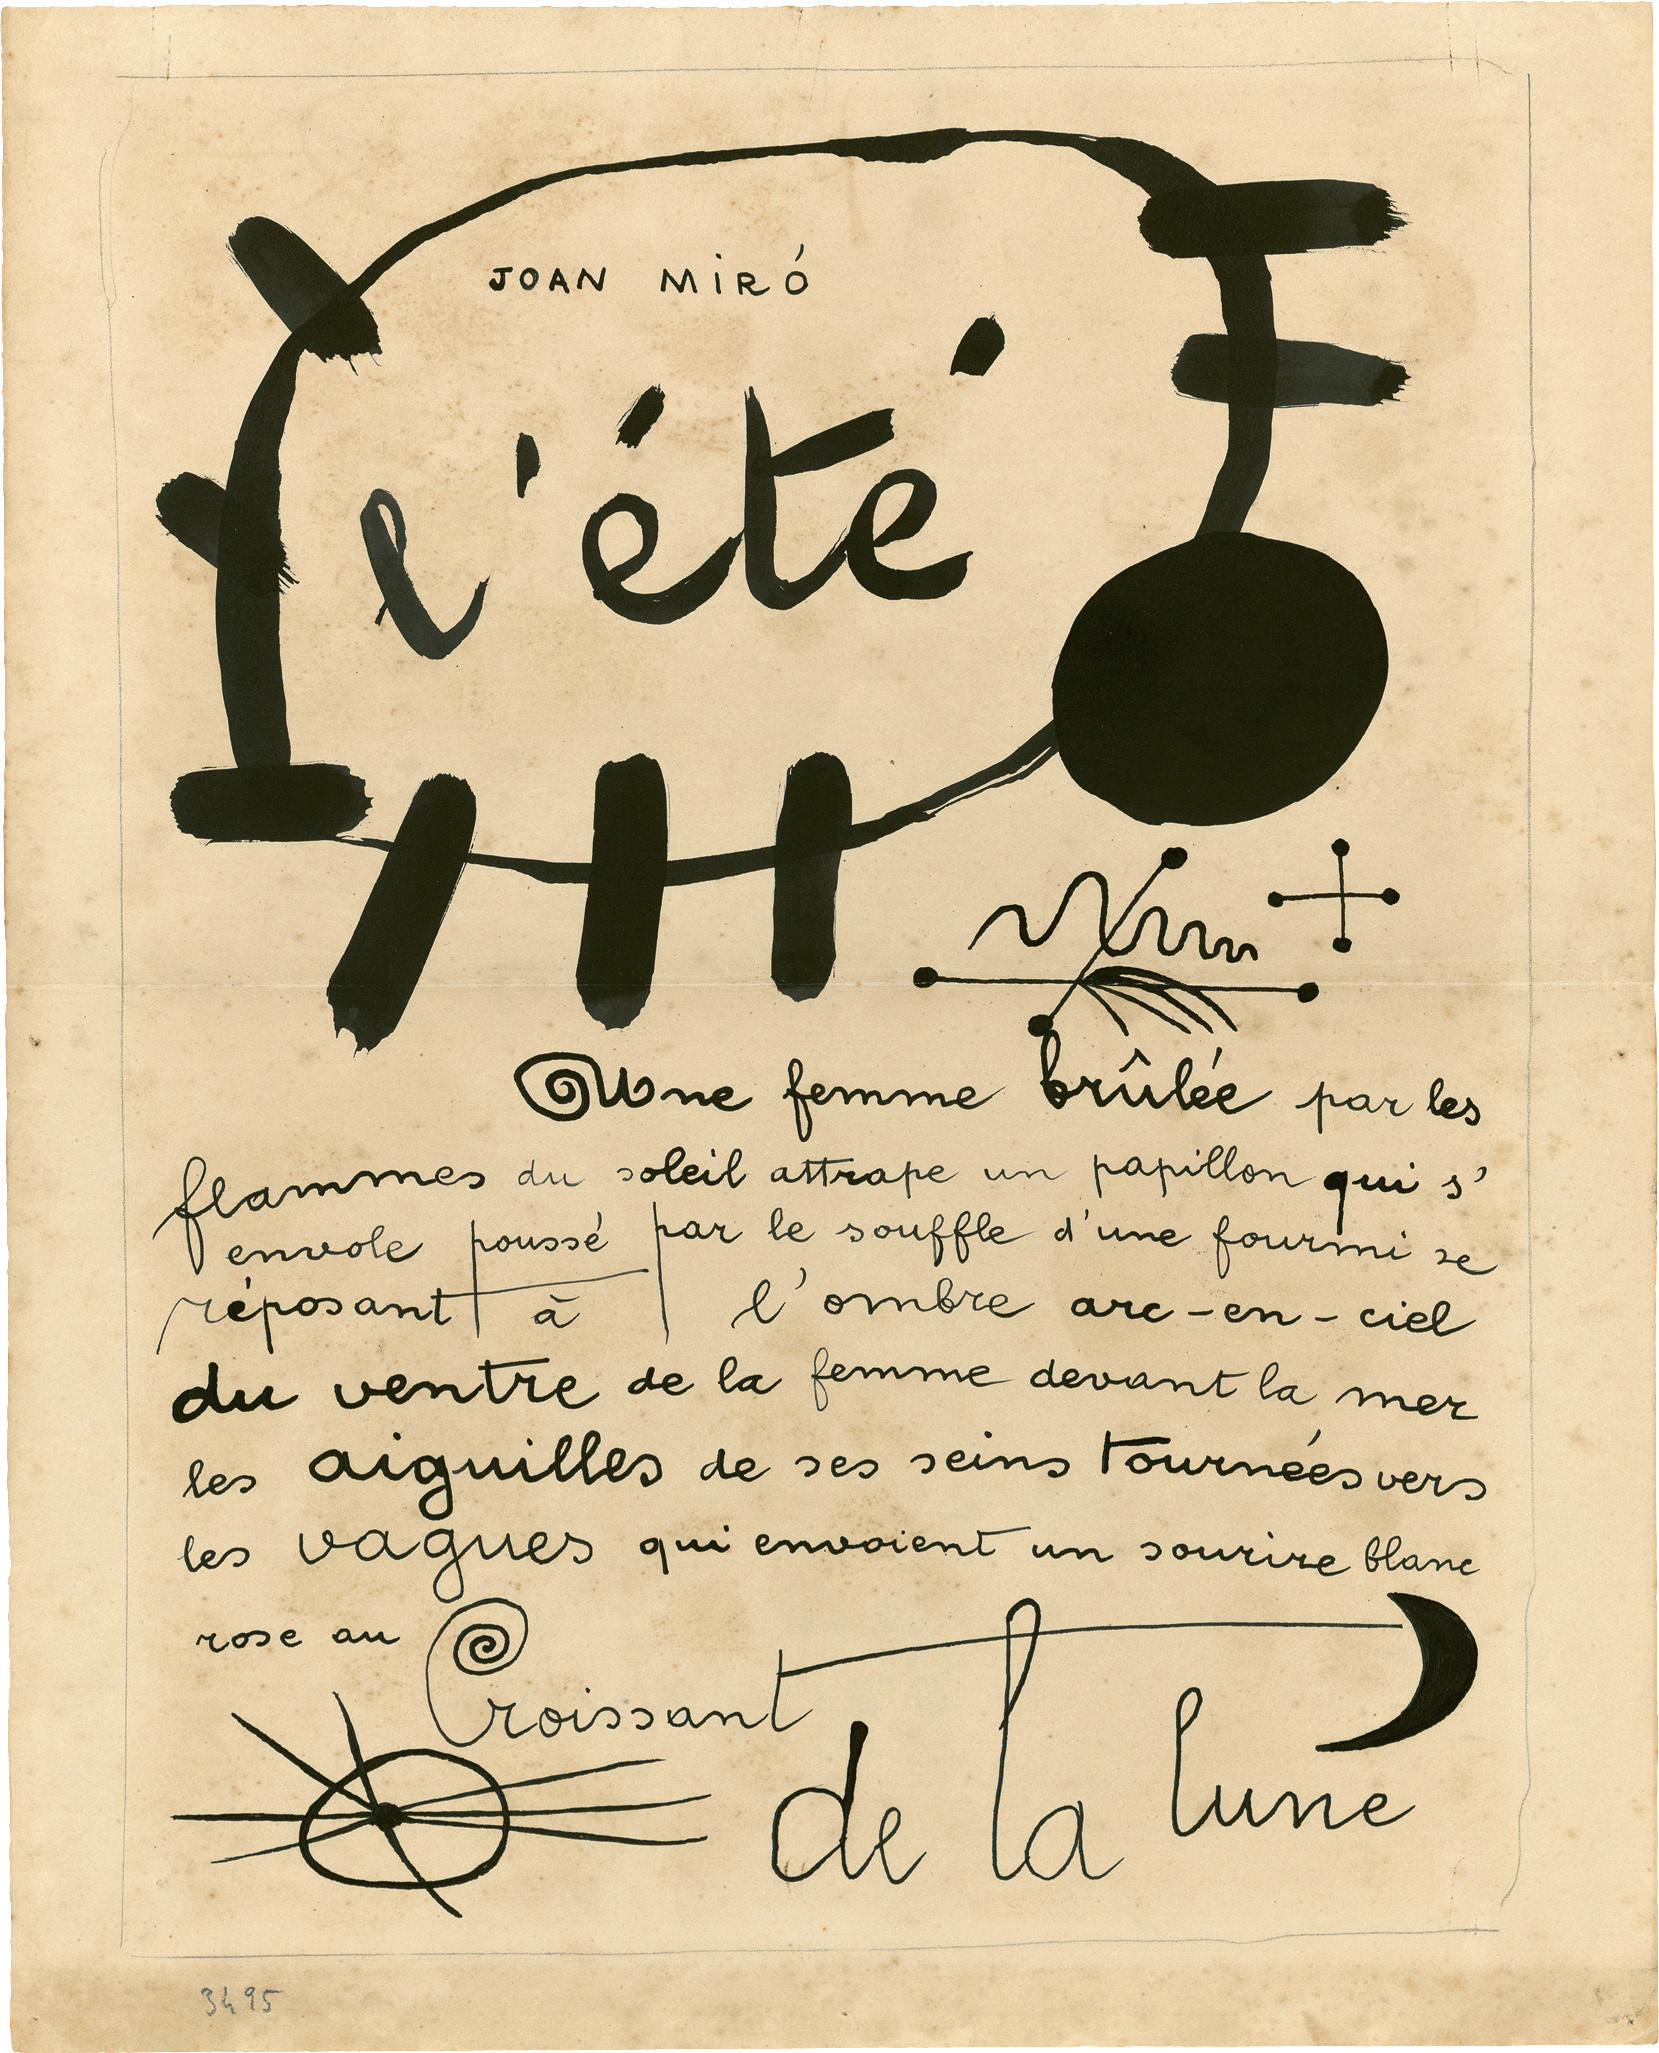 Dibujo-poema "El verano" de 1937